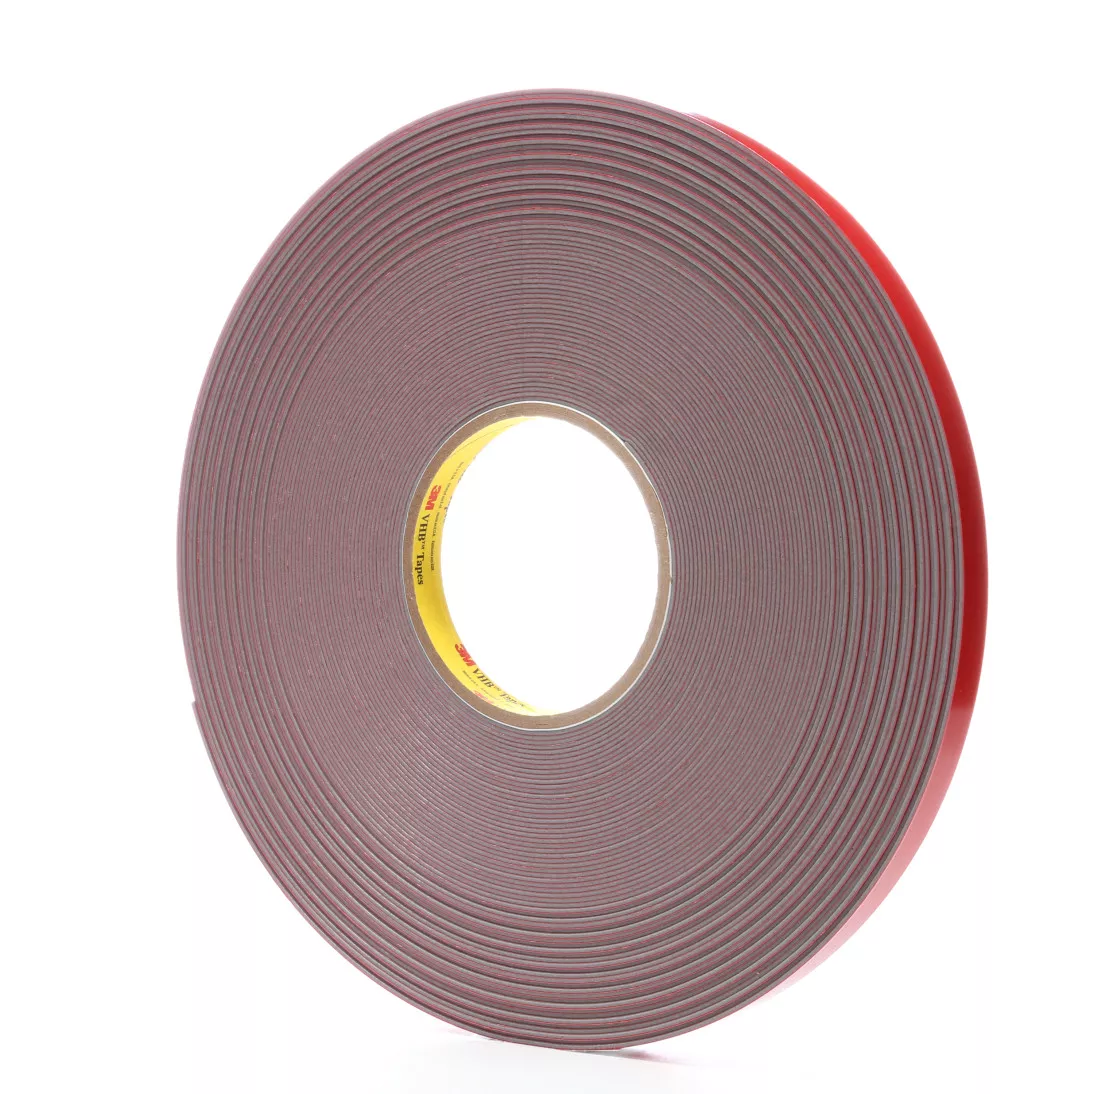 3M™ VHB™ Tape 4941F, Gray, 1/2 in x 36 yd, 45 mil, Film Liner, 18 rolls
per case